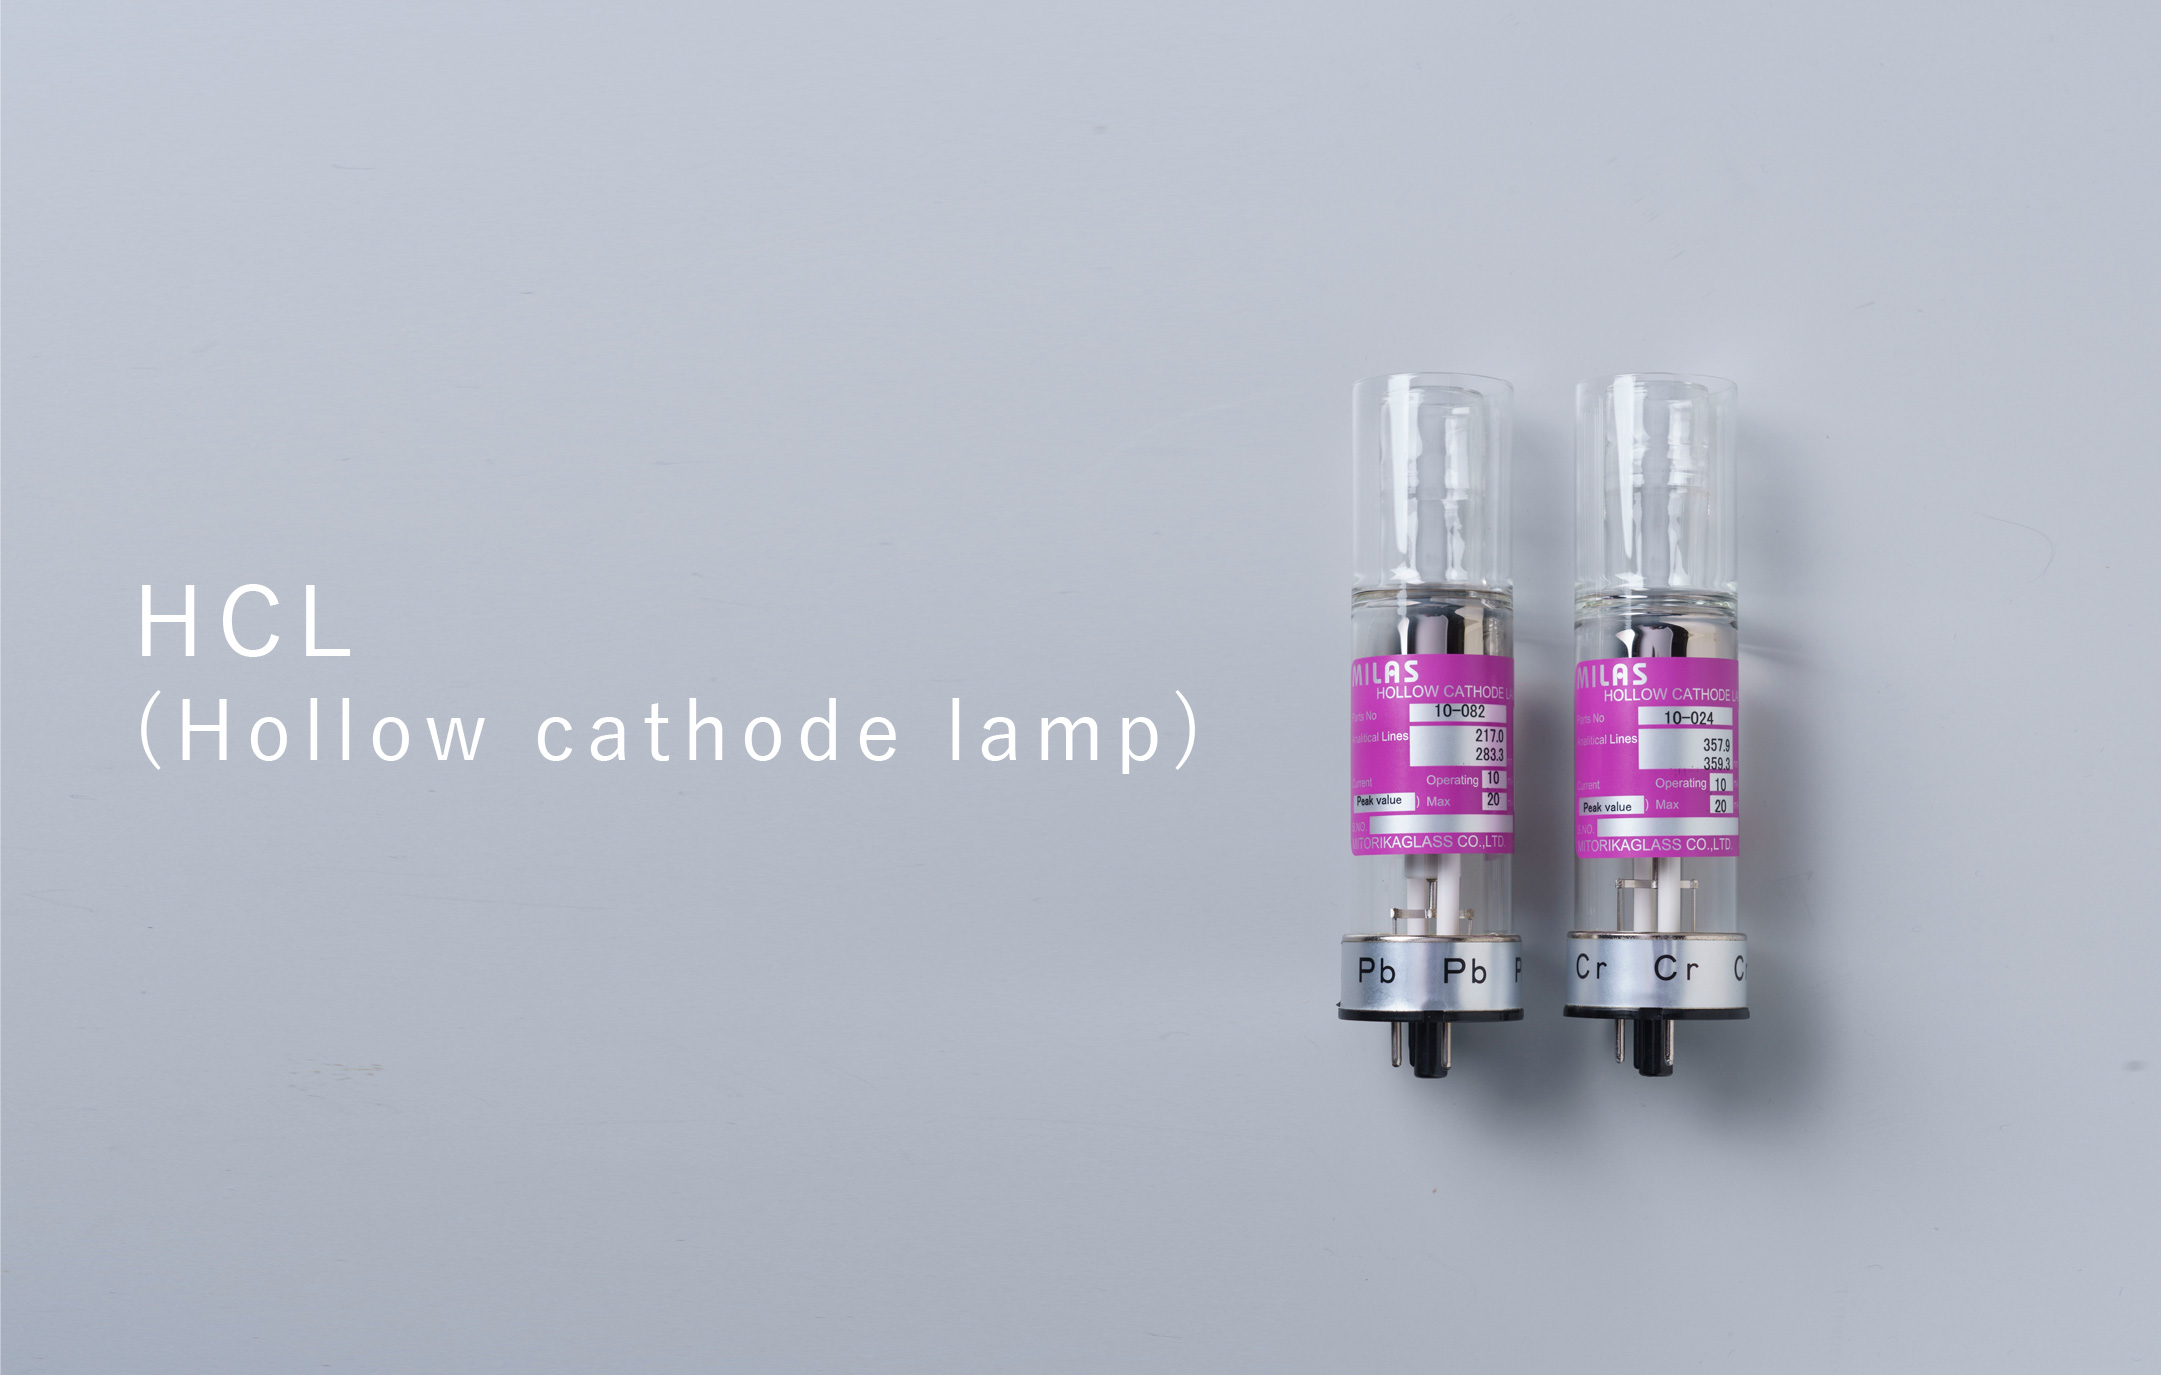 HCL (Hollow cathode lamp)